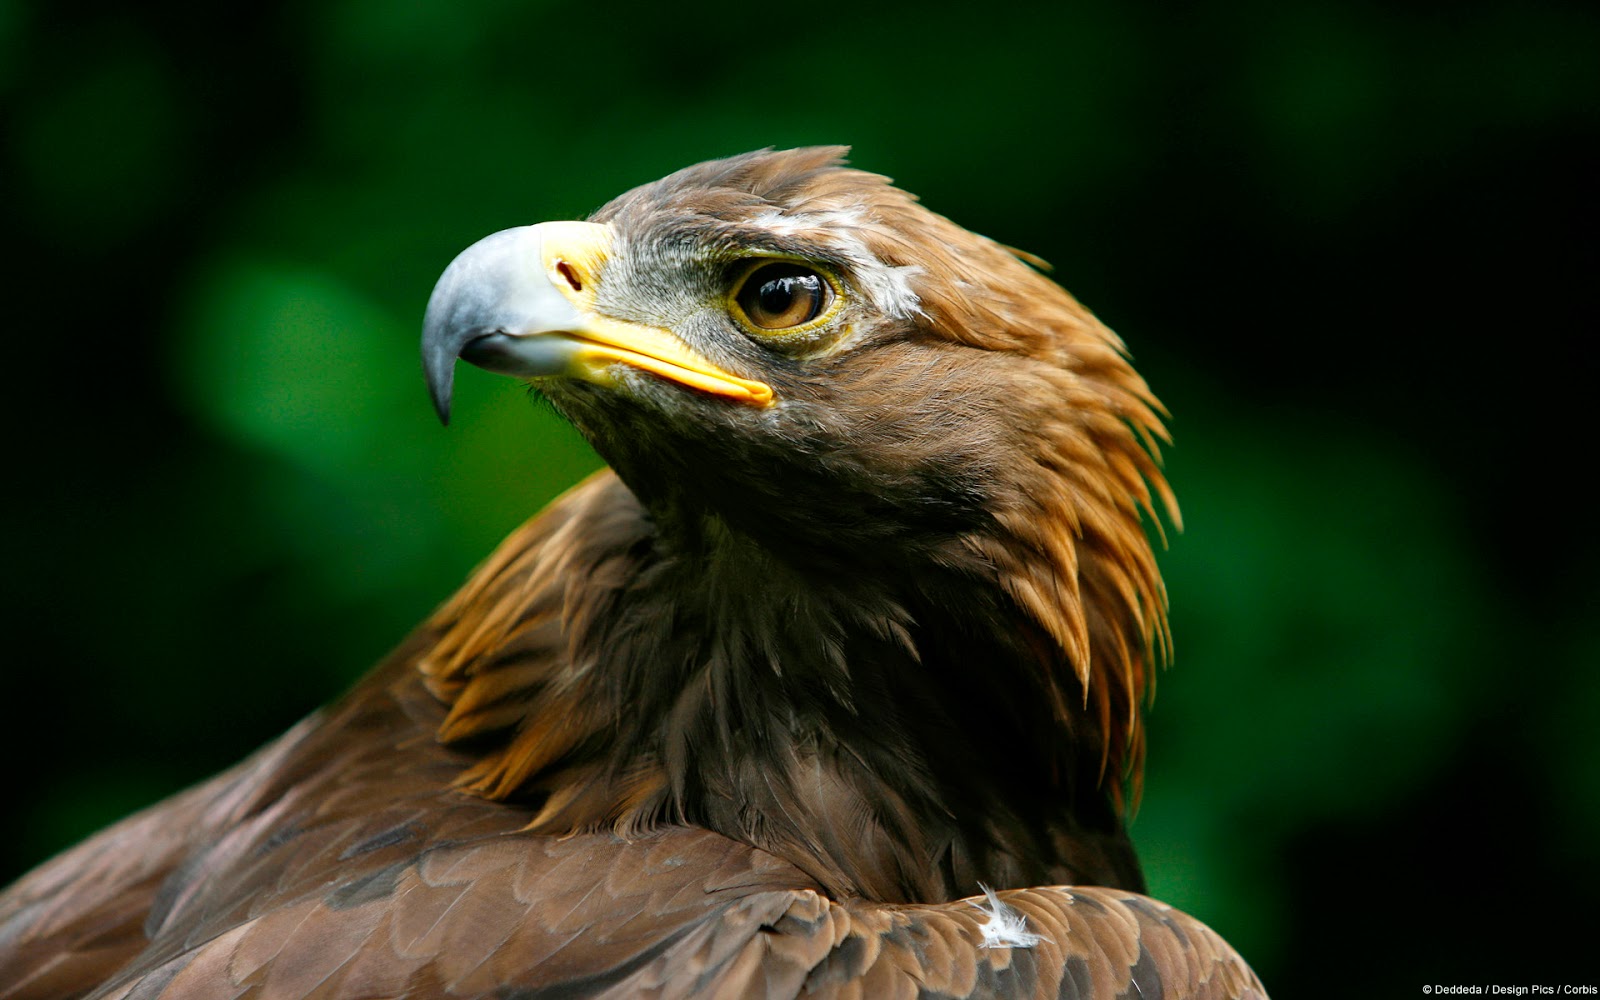 aguia wallpaper,bird,vertebrate,beak,bird of prey,golden eagle